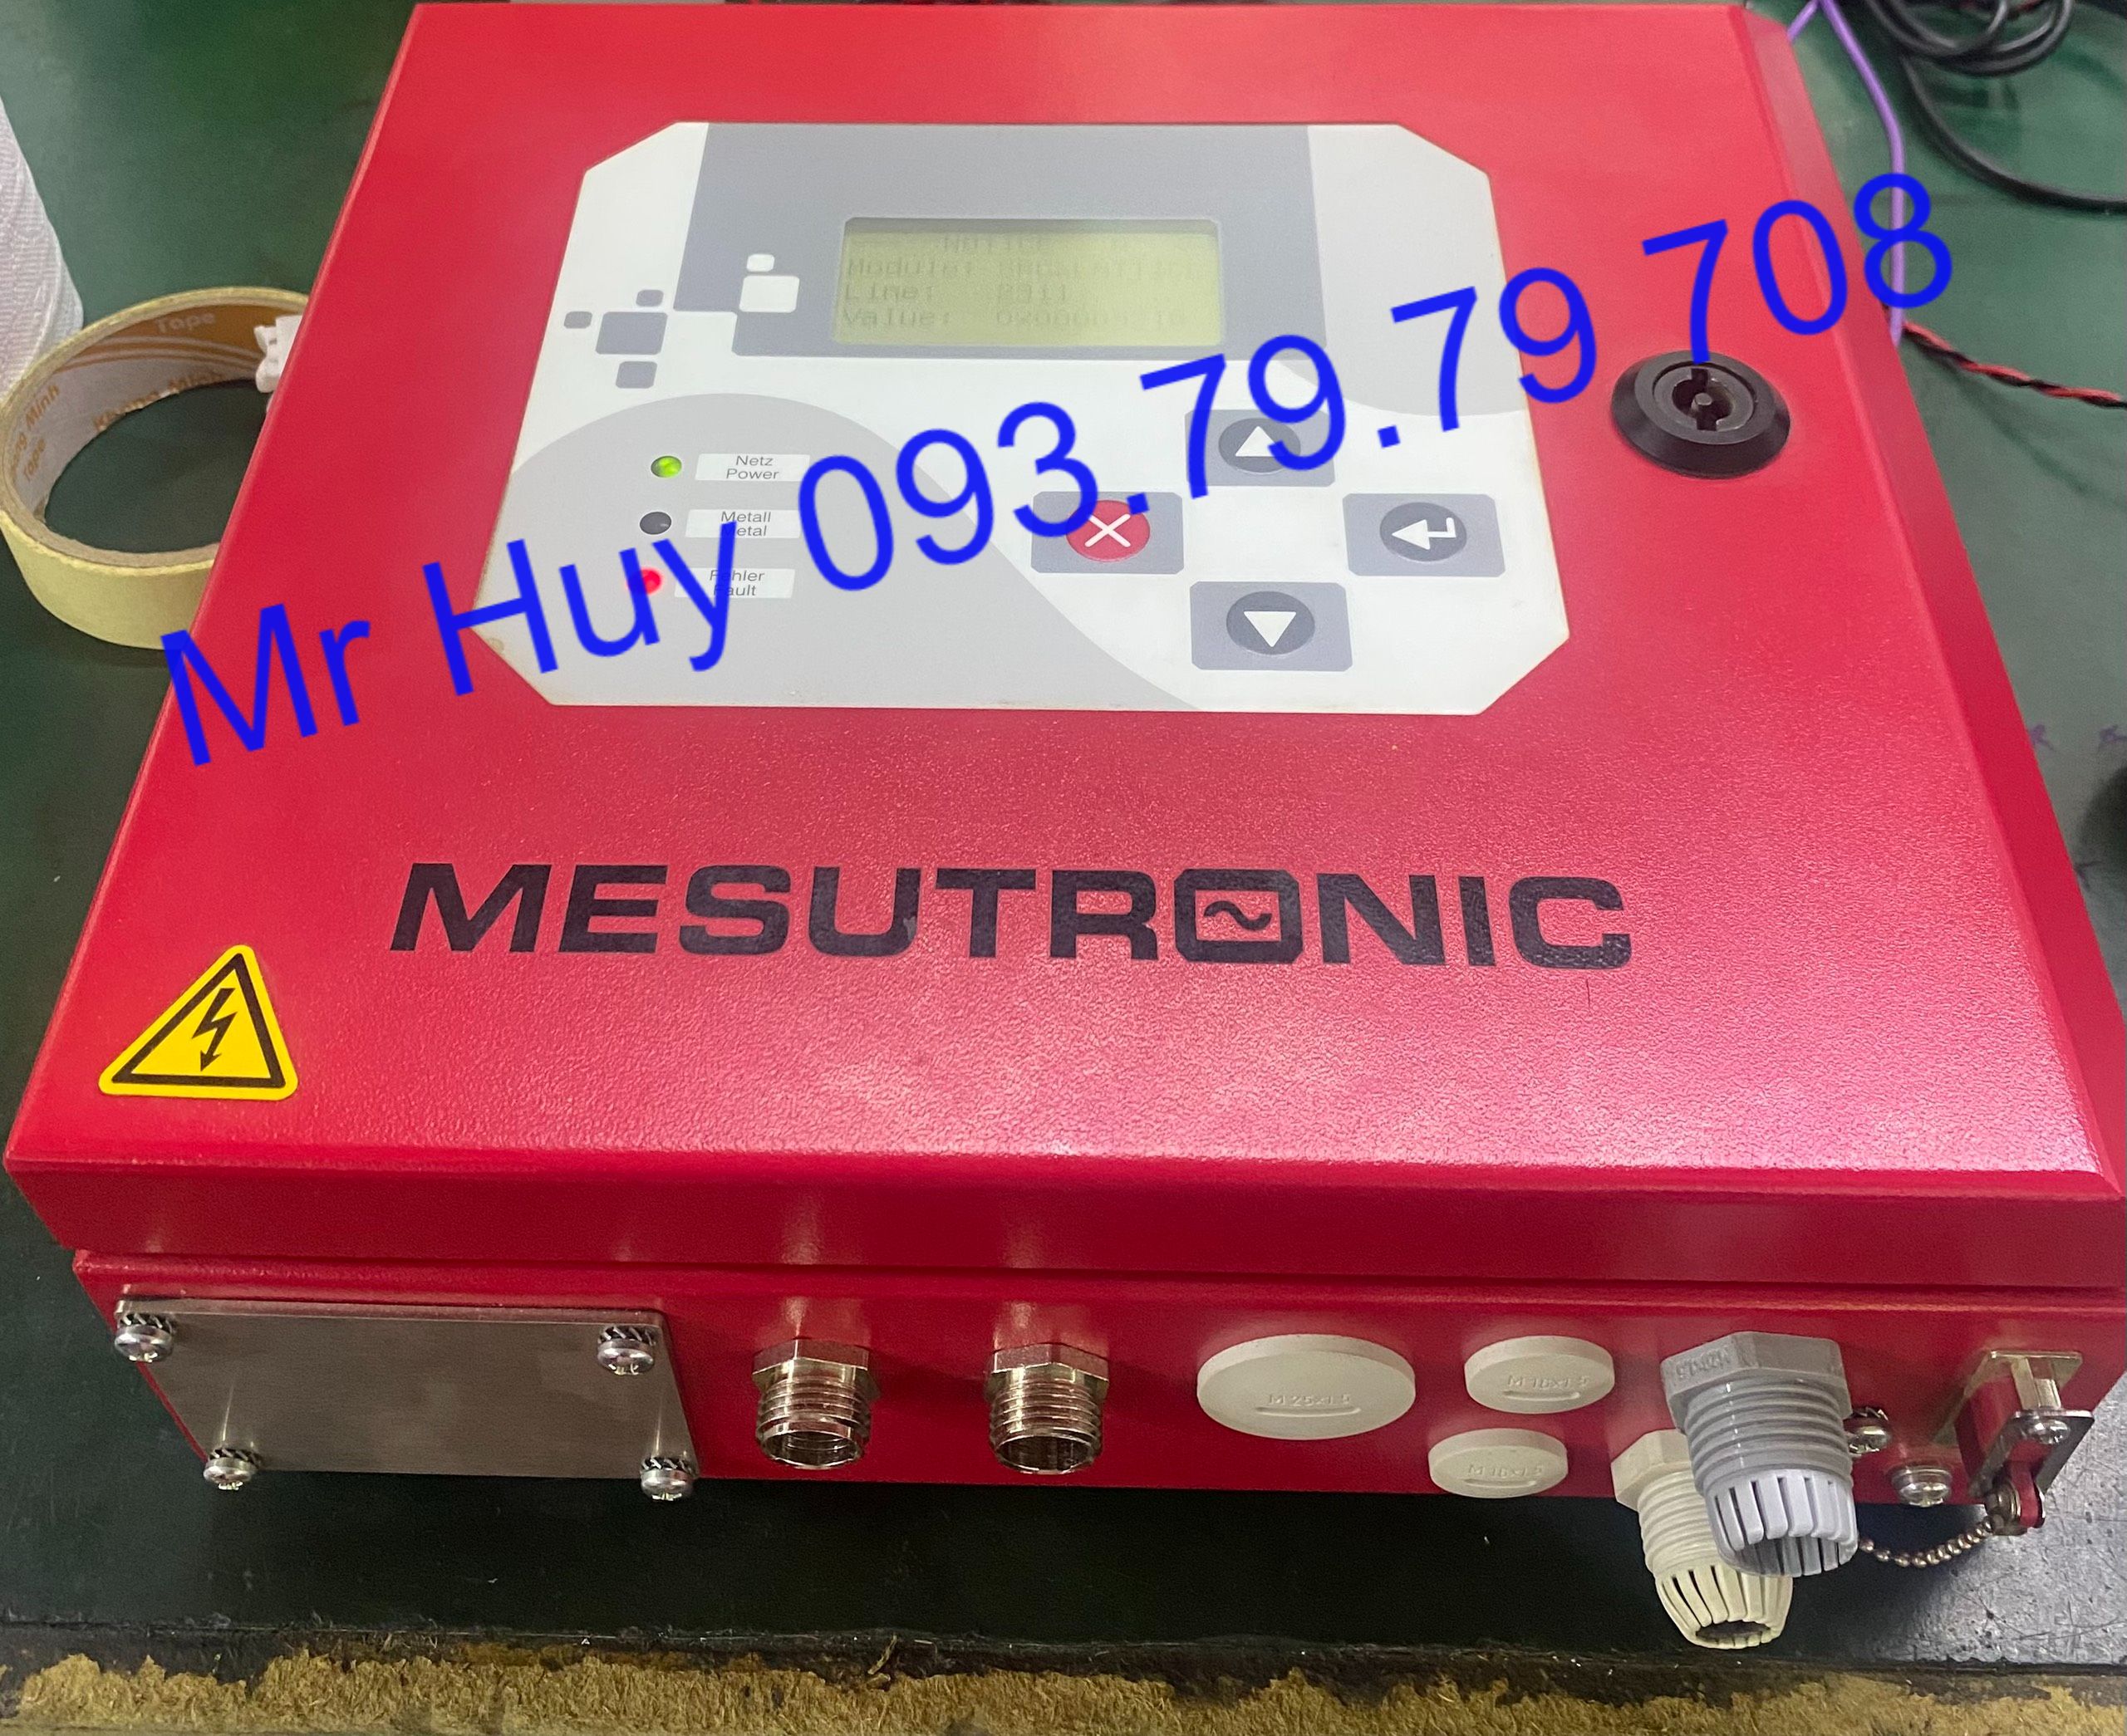 Máy dò kim loại Metron 05 MESUTRONIC Việt Nam Nhất Huy Automation